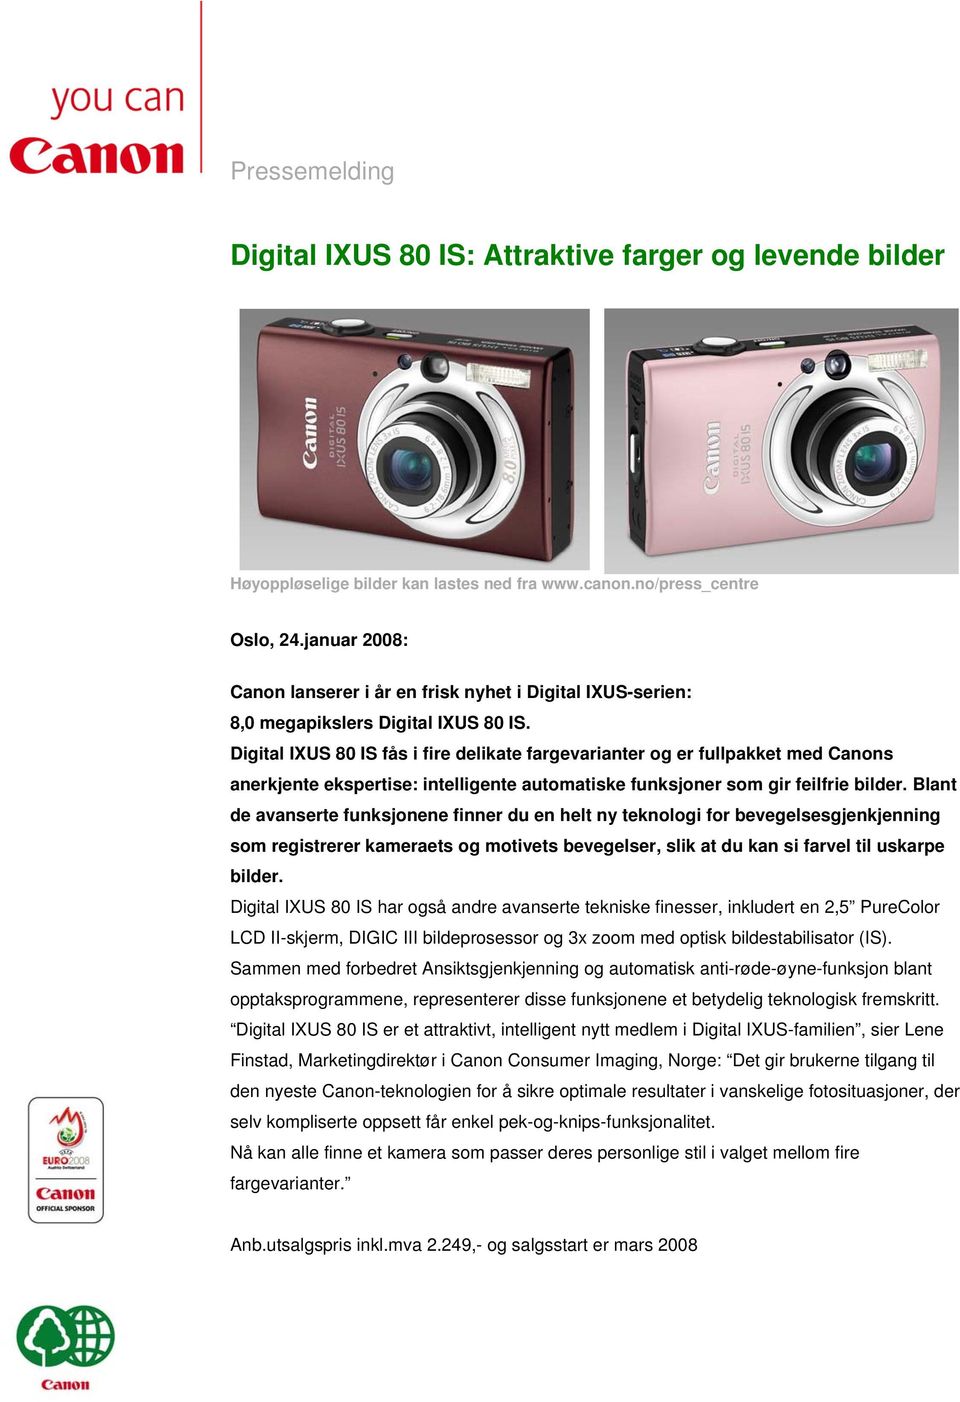 Digital IXUS 80 IS fås i fire delikate fargevarianter og er fullpakket med Canons anerkjente ekspertise: intelligente automatiske funksjoner som gir feilfrie bilder.